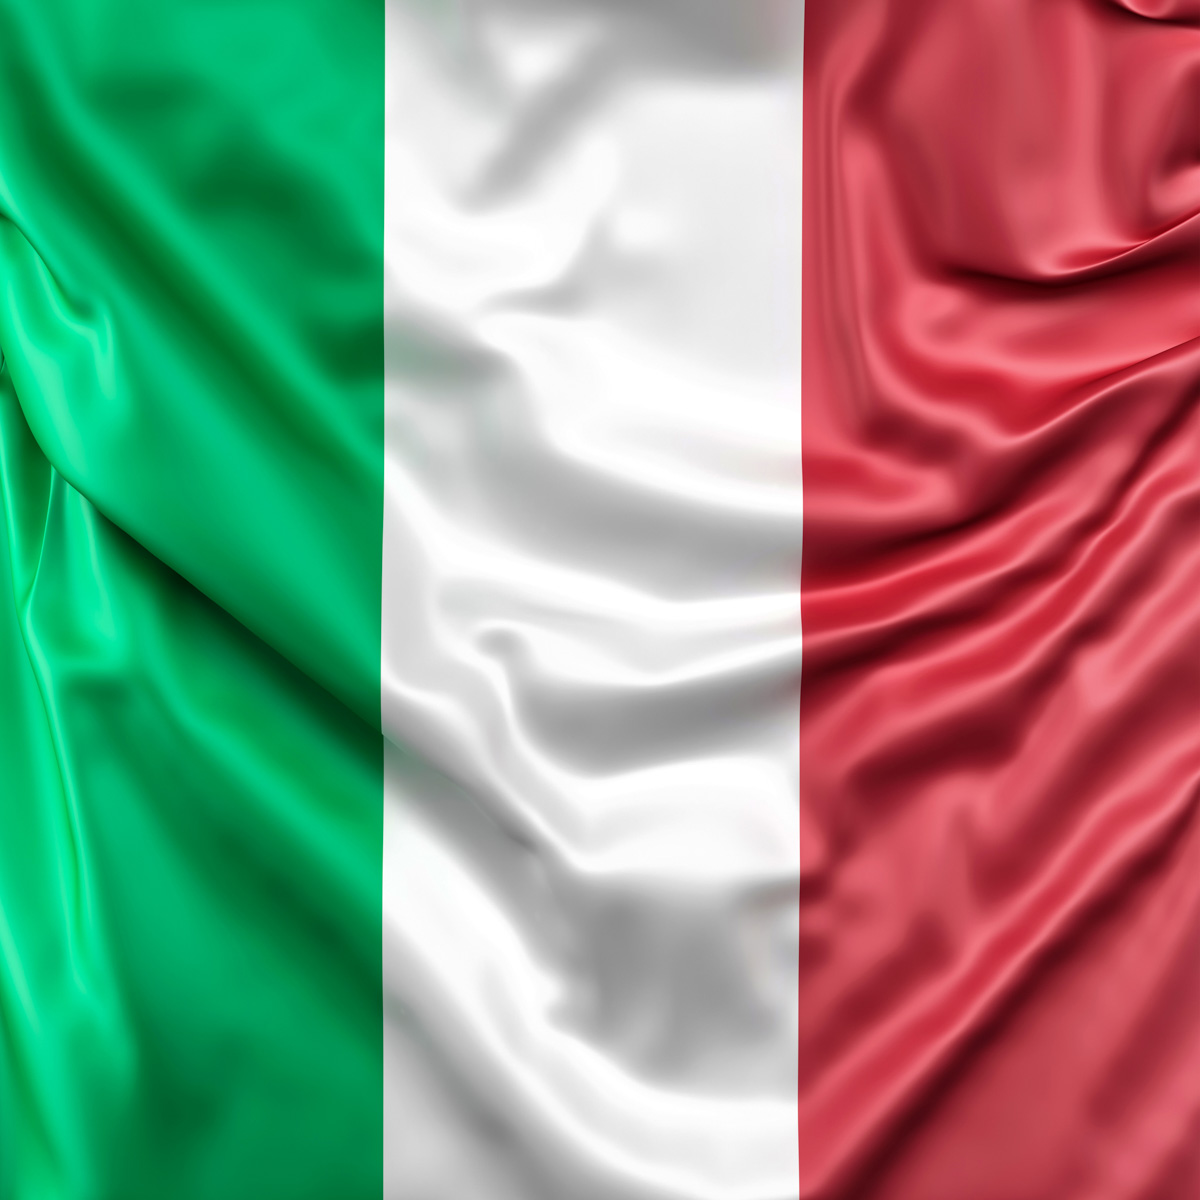 Italien Fahne kaufen - Flagge Italien - Fahne Italien